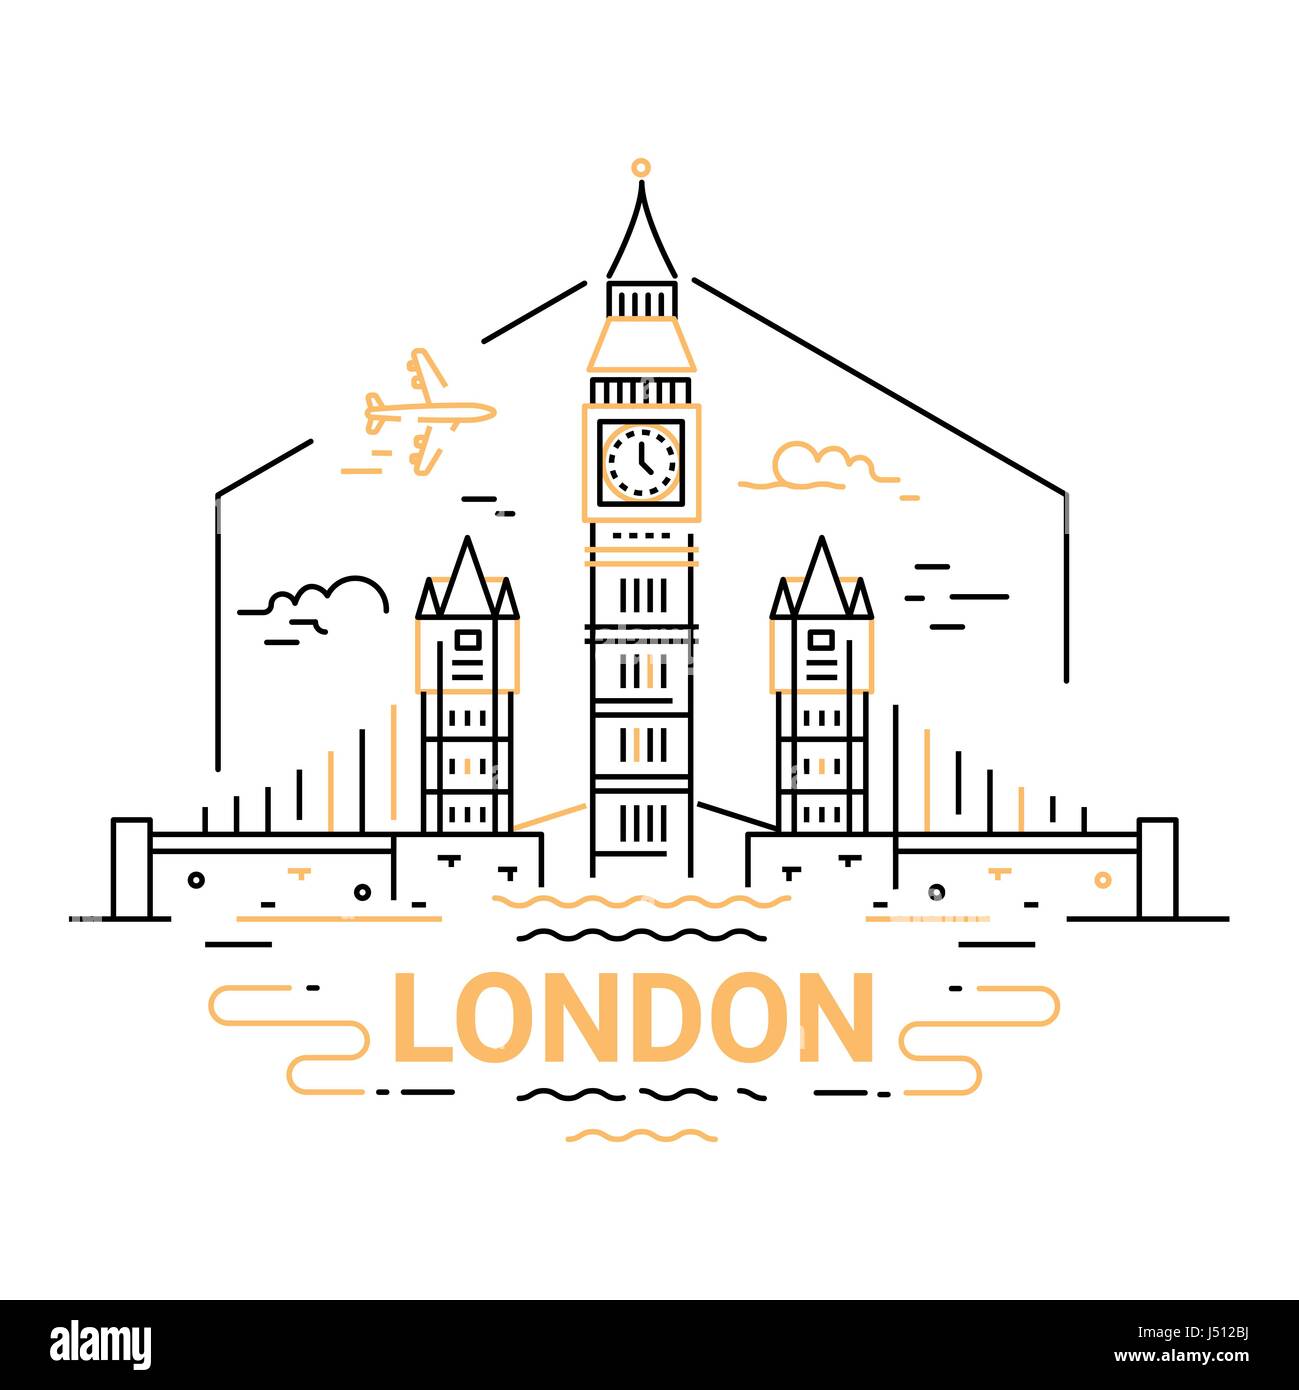 London - modern vector line travel illustration Stock Vector